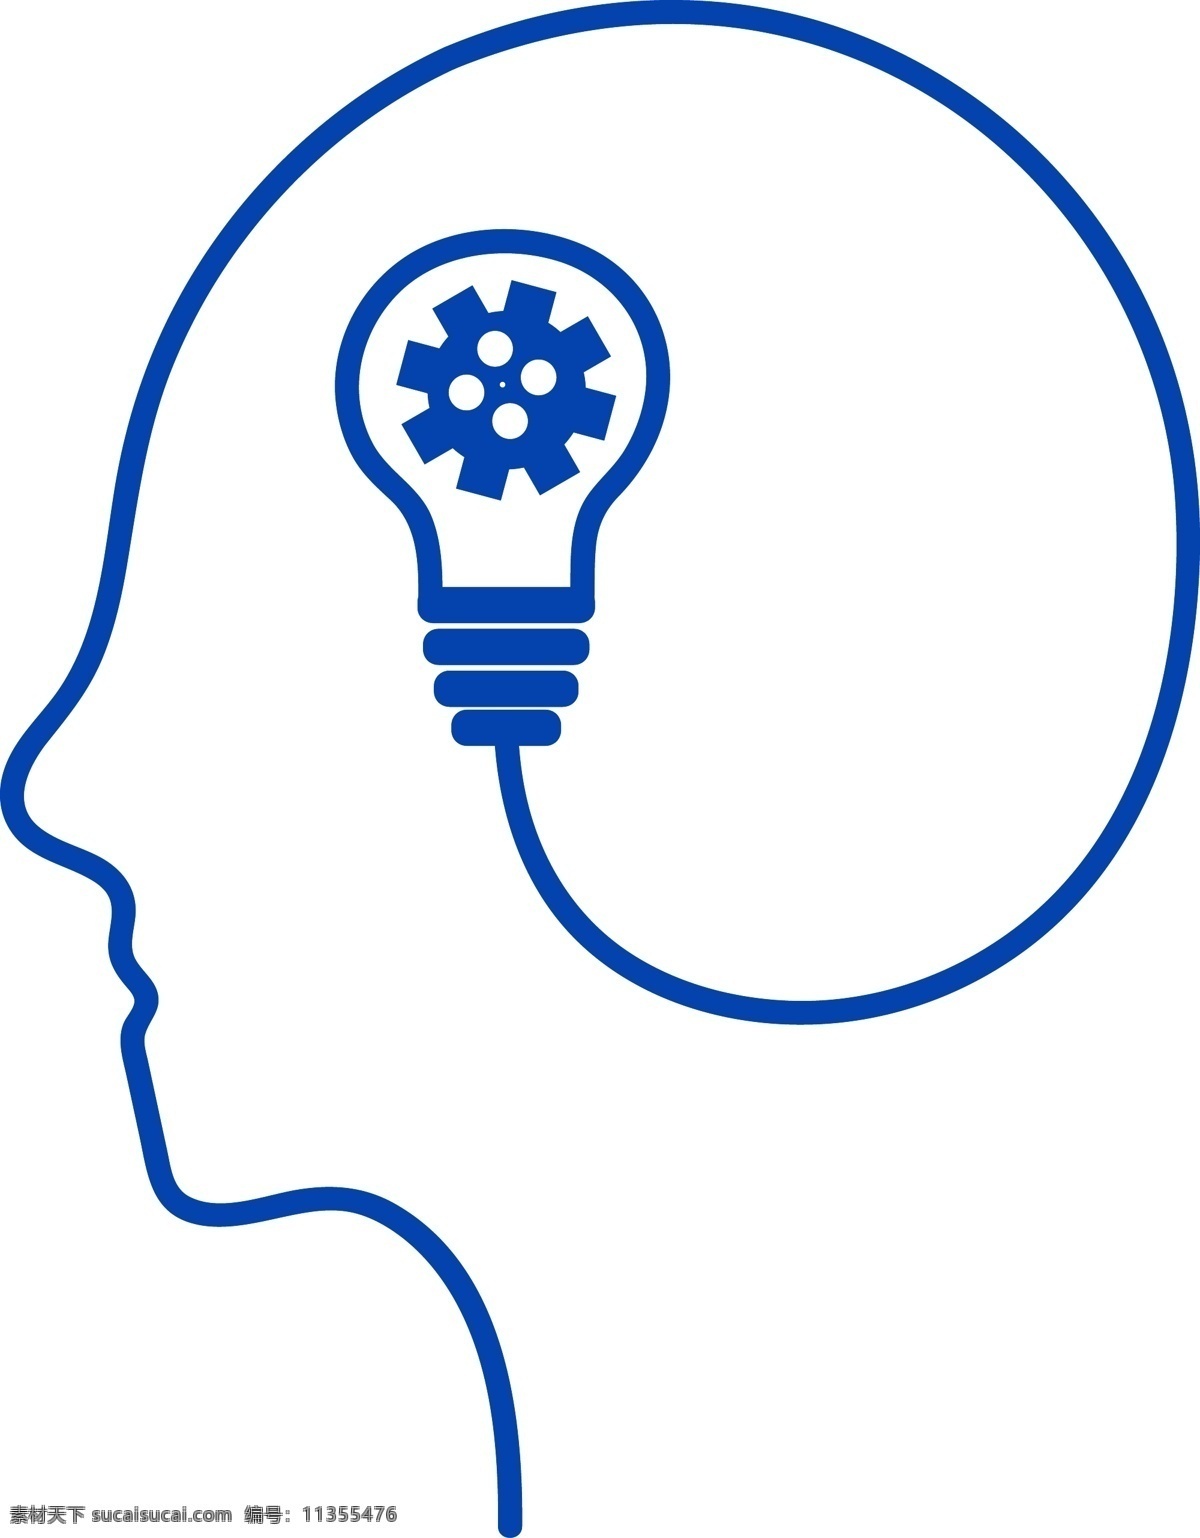 矢量 大脑 中 亮起 电灯 脑子 脑 人脑 脑筋 灯泡 通电 想法 蓝色 线条 曲线 扁平 齿轮 链接